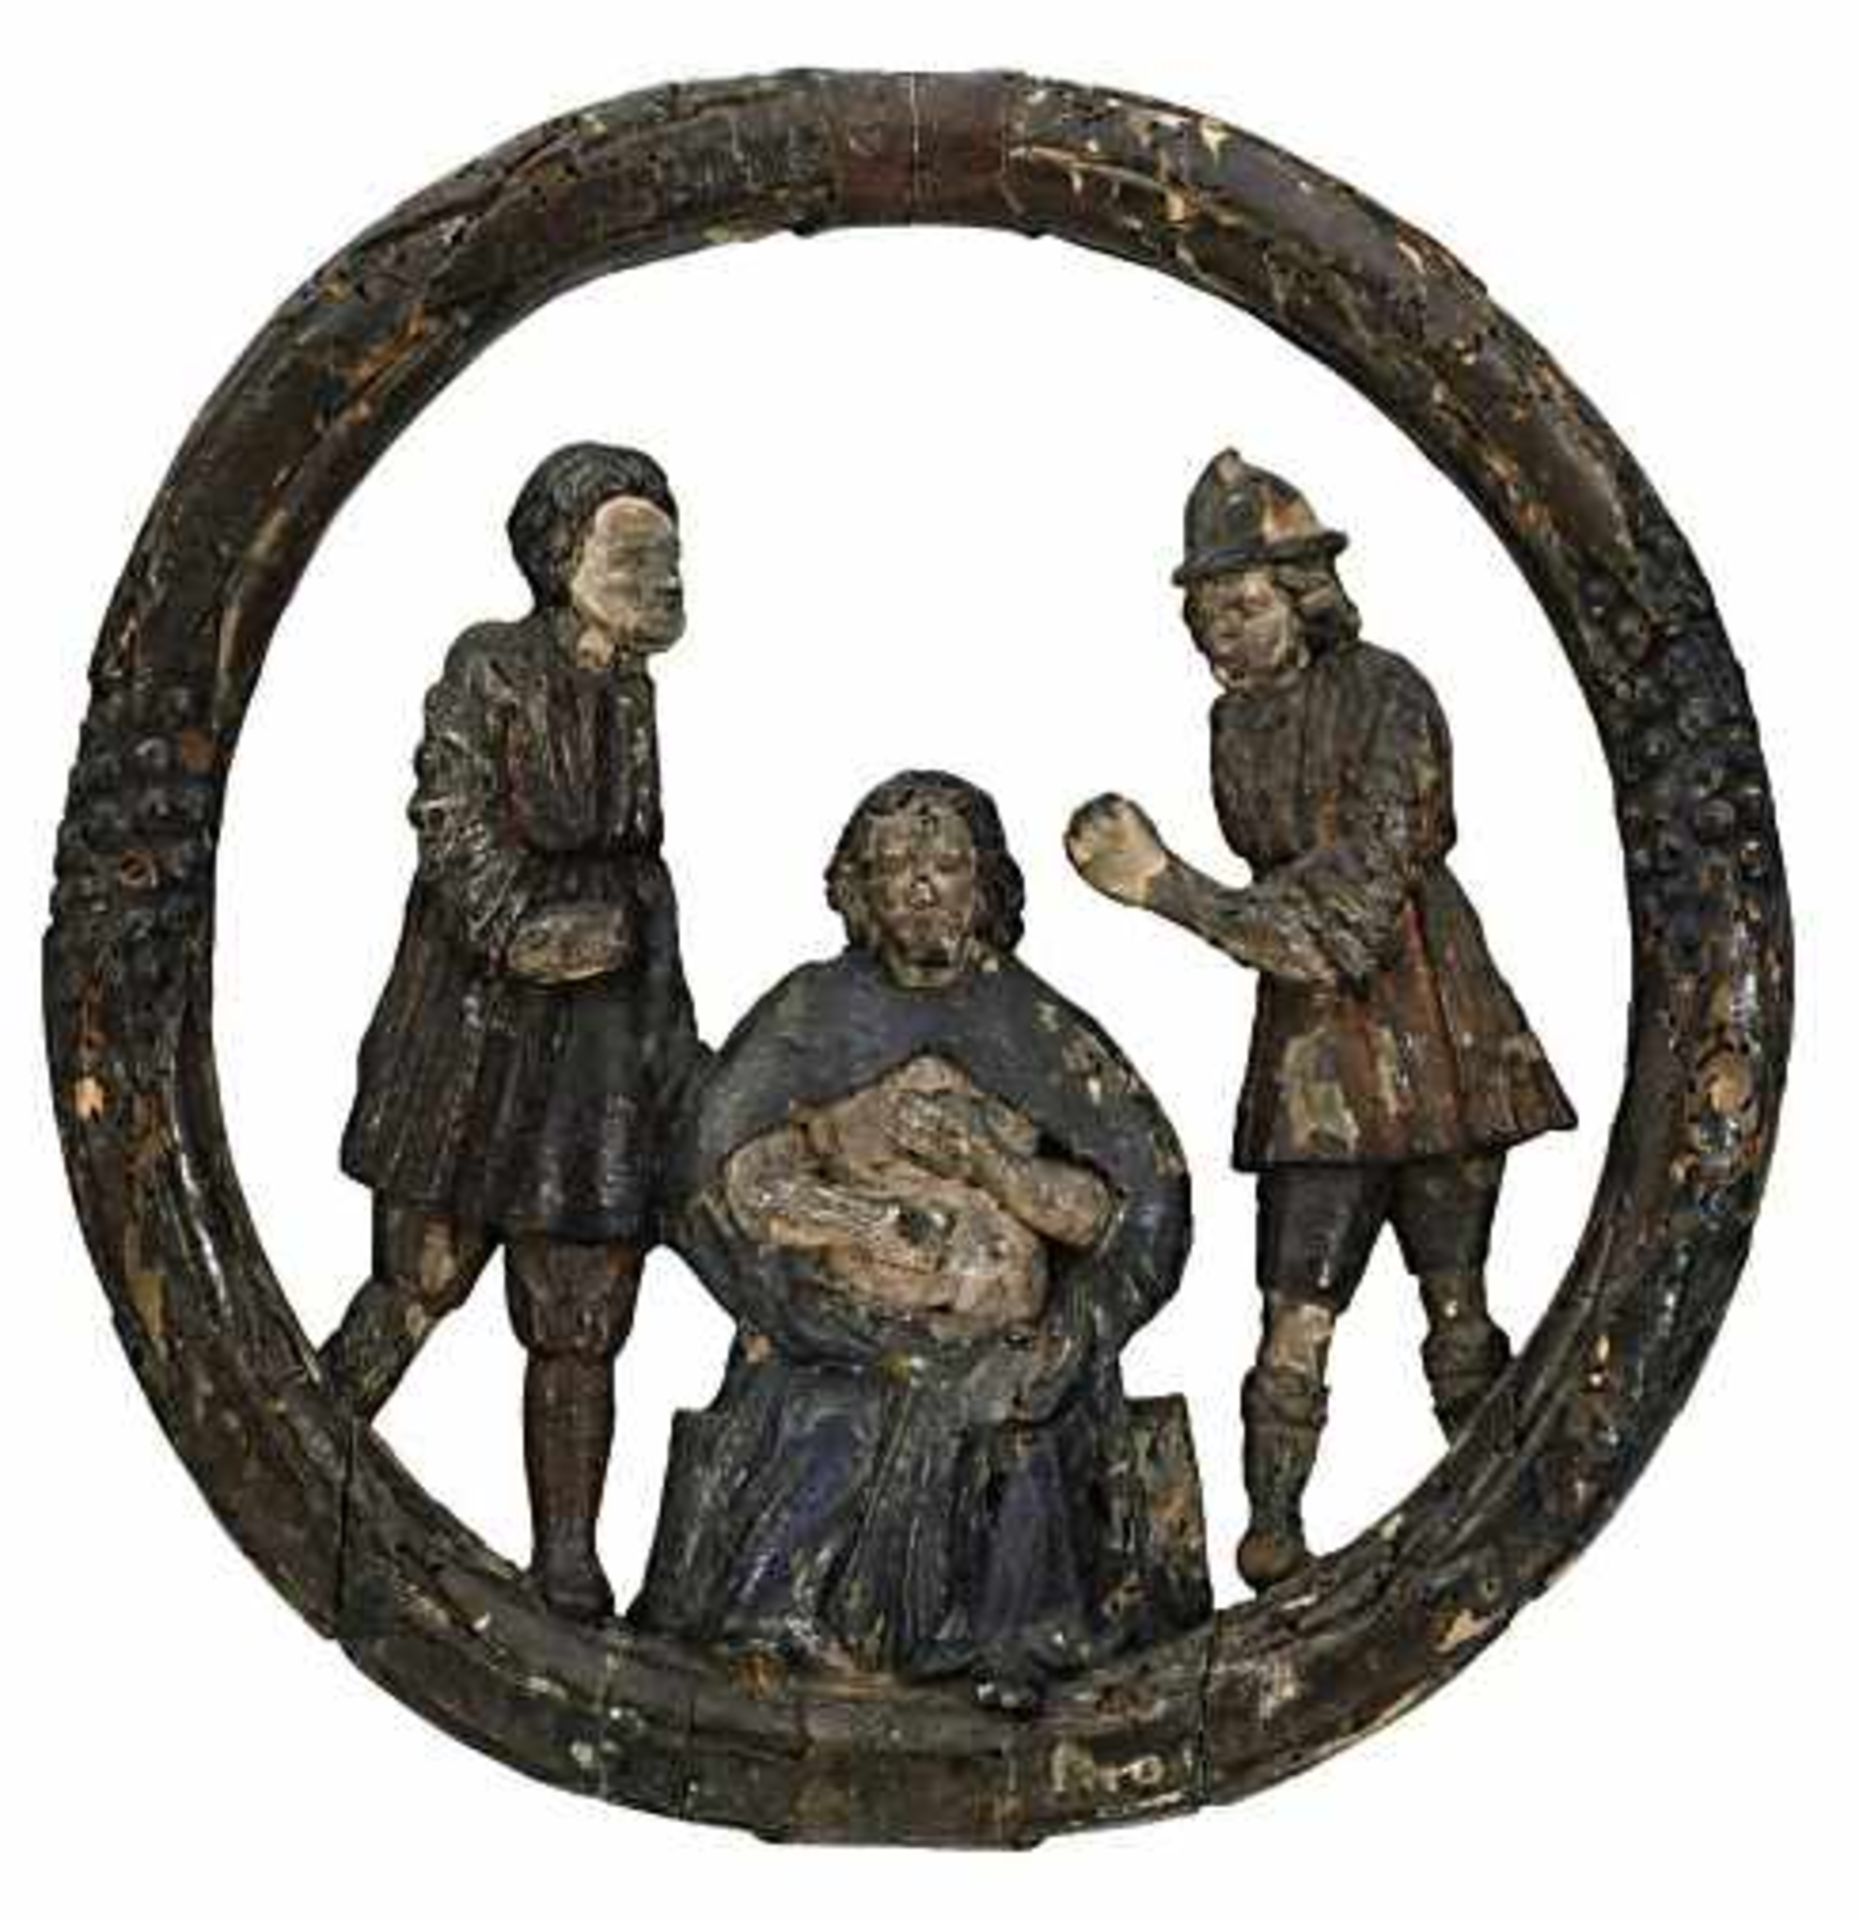 Verspottung ChristiAlpenraum, 18. Jh.Holz, geschnitzt, gefasst.Rep., besch.35 x